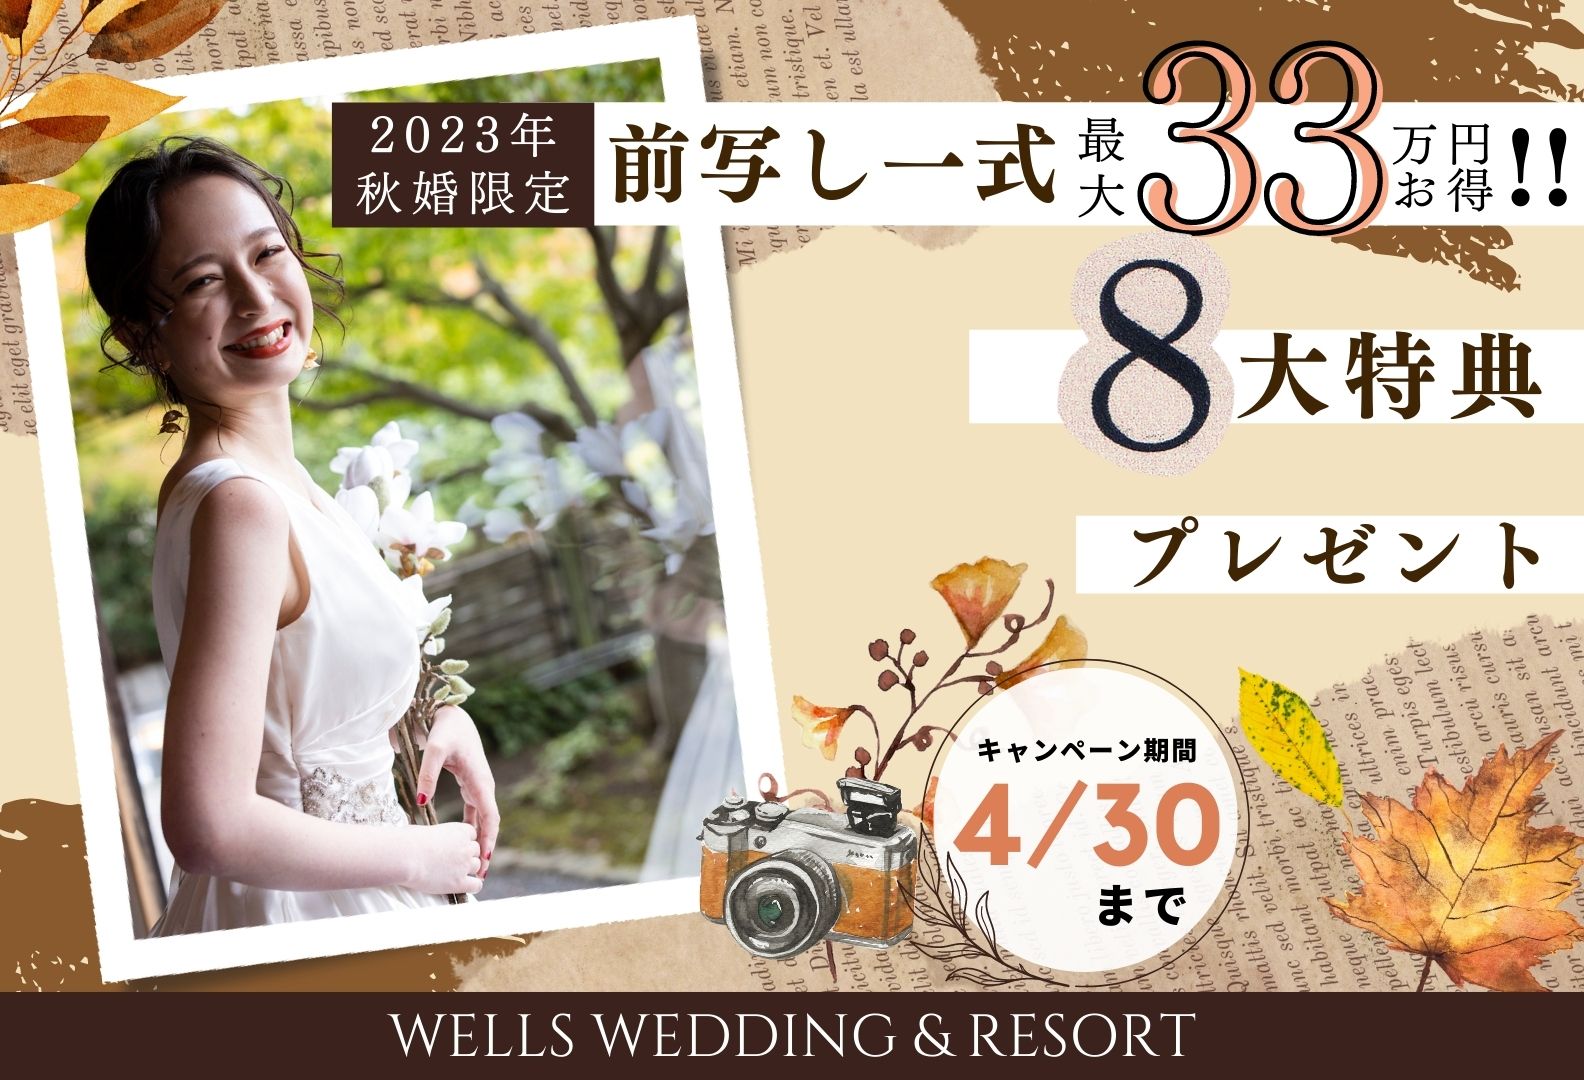 香川県の人気の結婚式場のシェルエメールの秋婚プラン